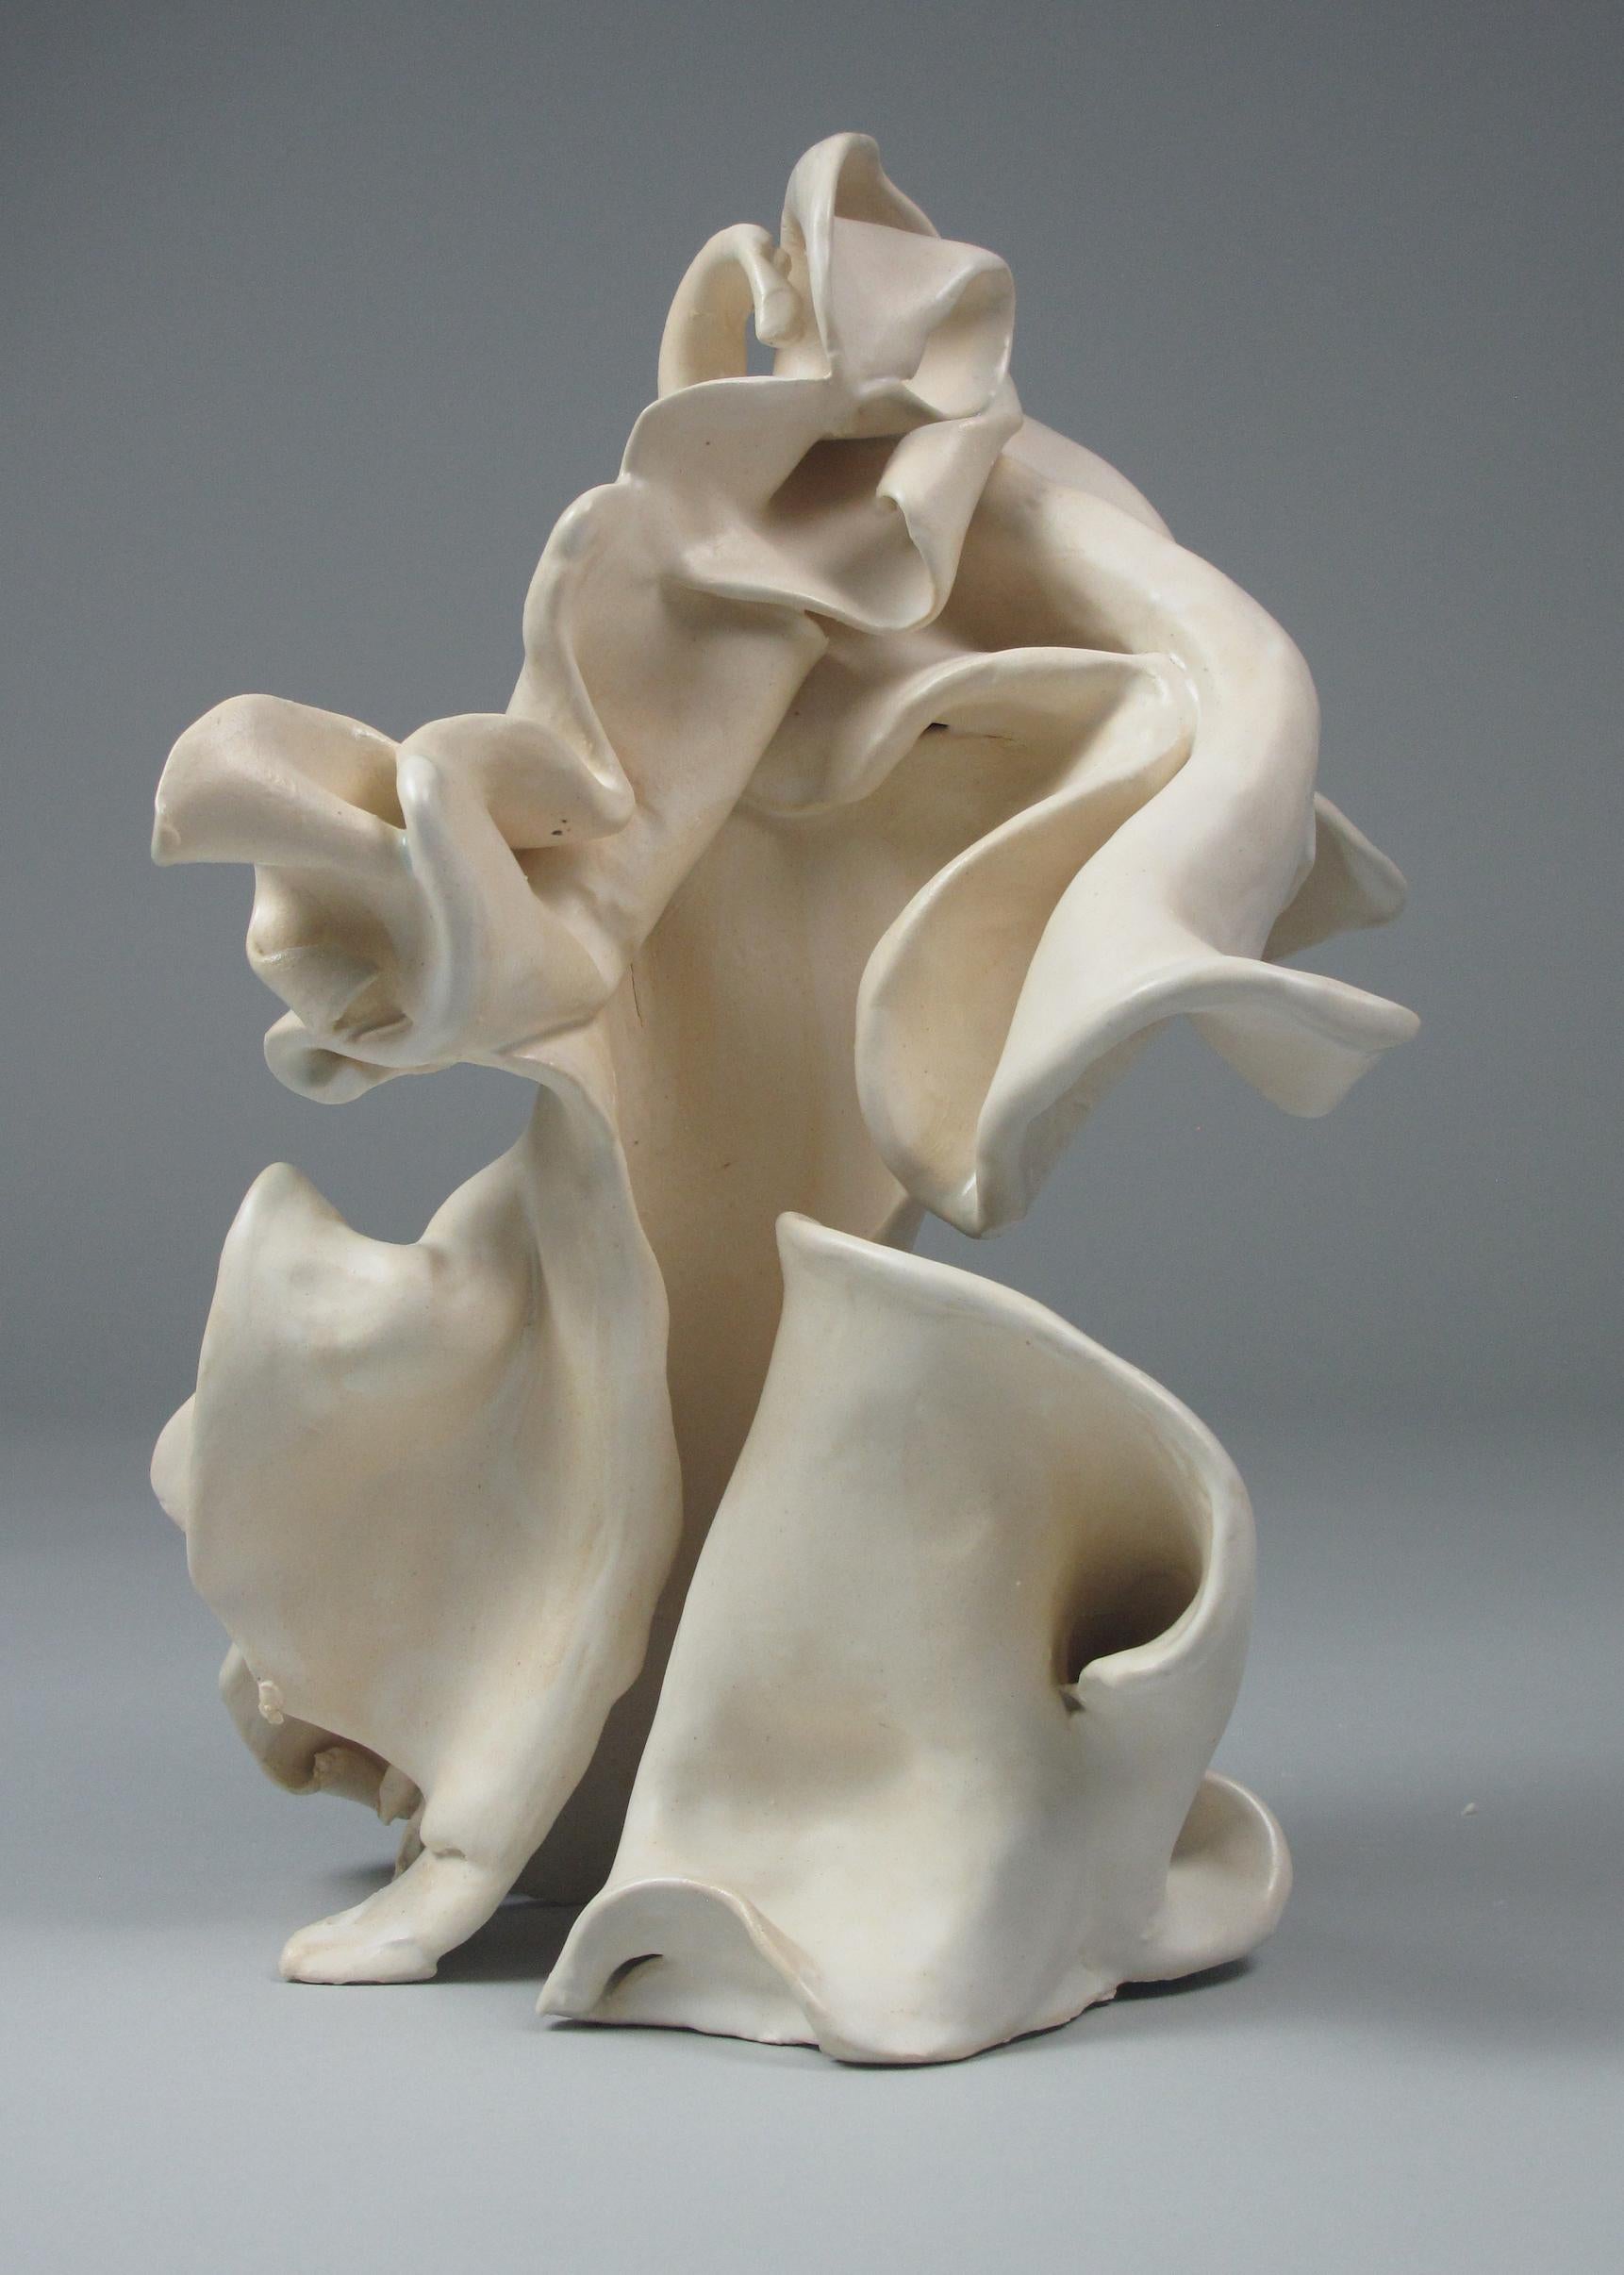 "Pucker", gestural, ceramic, sculpture, white, cream, stoneware